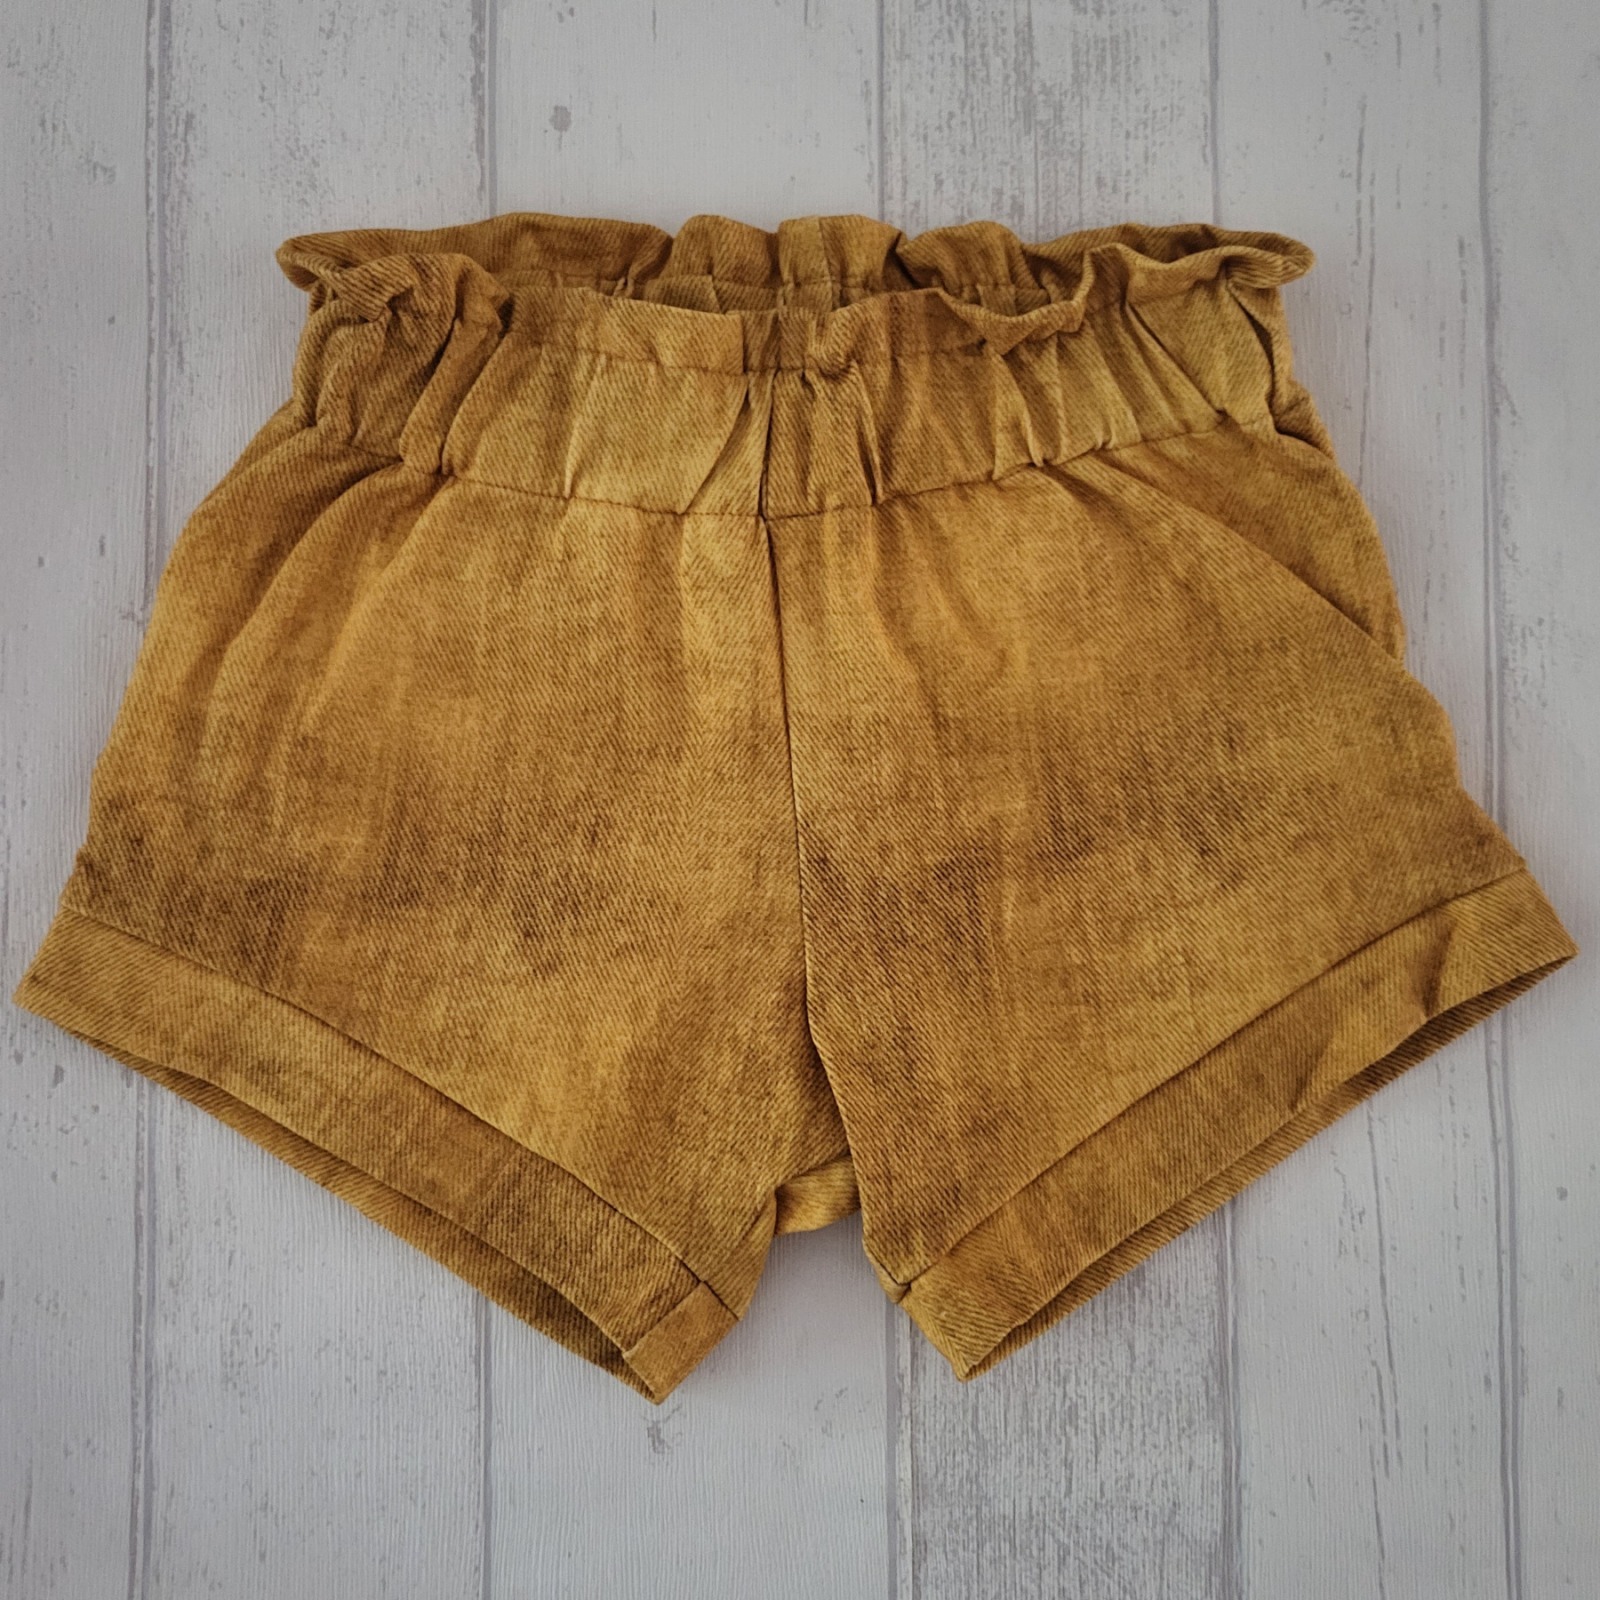 Sofortkauf Handmade Sunny Shorts Gr. 116 von NahtRabatz